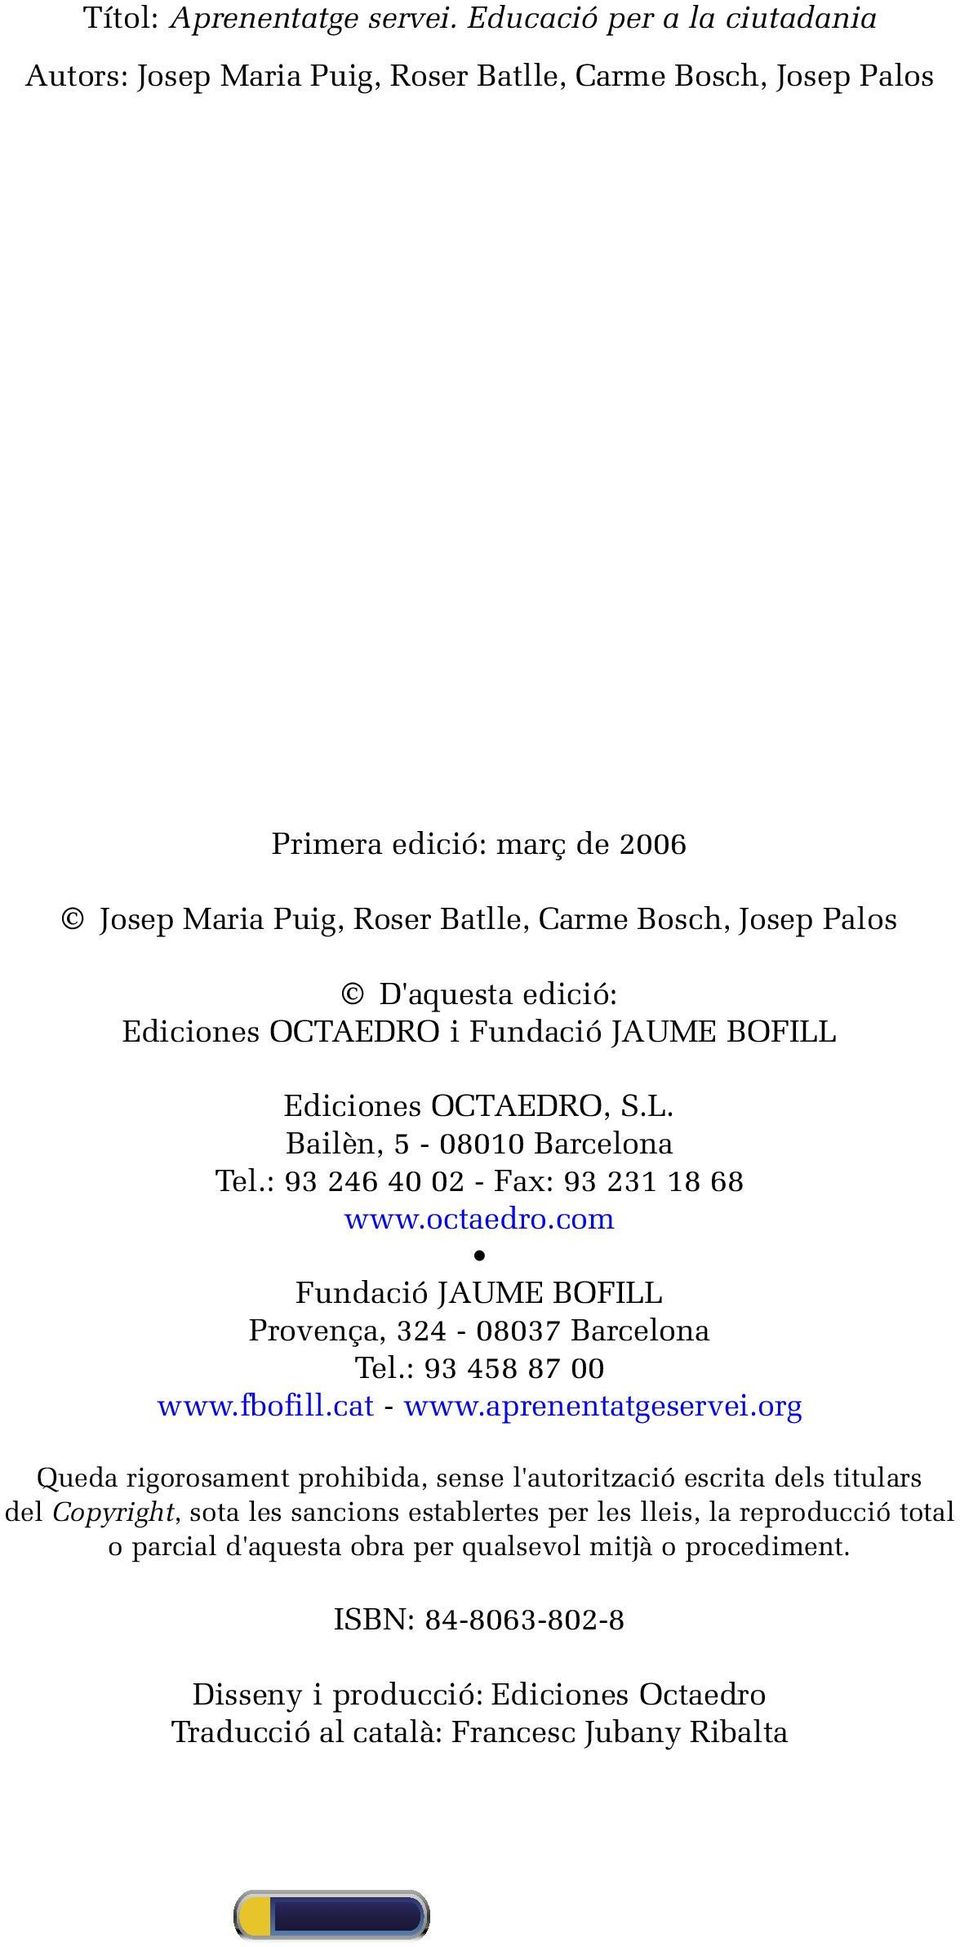 Ediciones Octaedro i Fundació JAUME BOFILL Ediciones Octaedro, S.L. Bailèn, 5-08010 Barcelona Tel.: 93 246 40 02 - Fax: 93 231 18 68 www.octaedro.